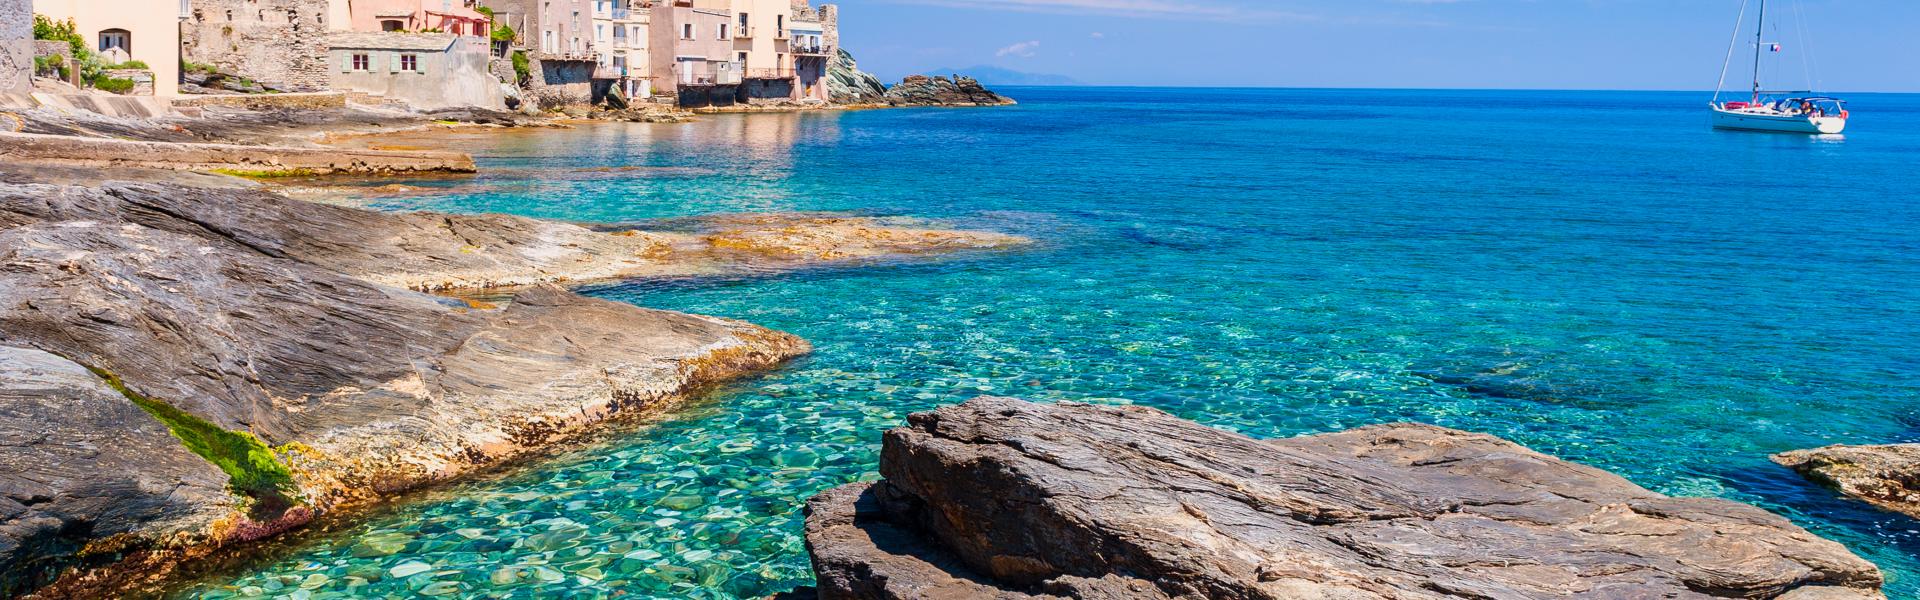 Locations de vacances et chambres d'hôtes au Cap Corse - Casamundo